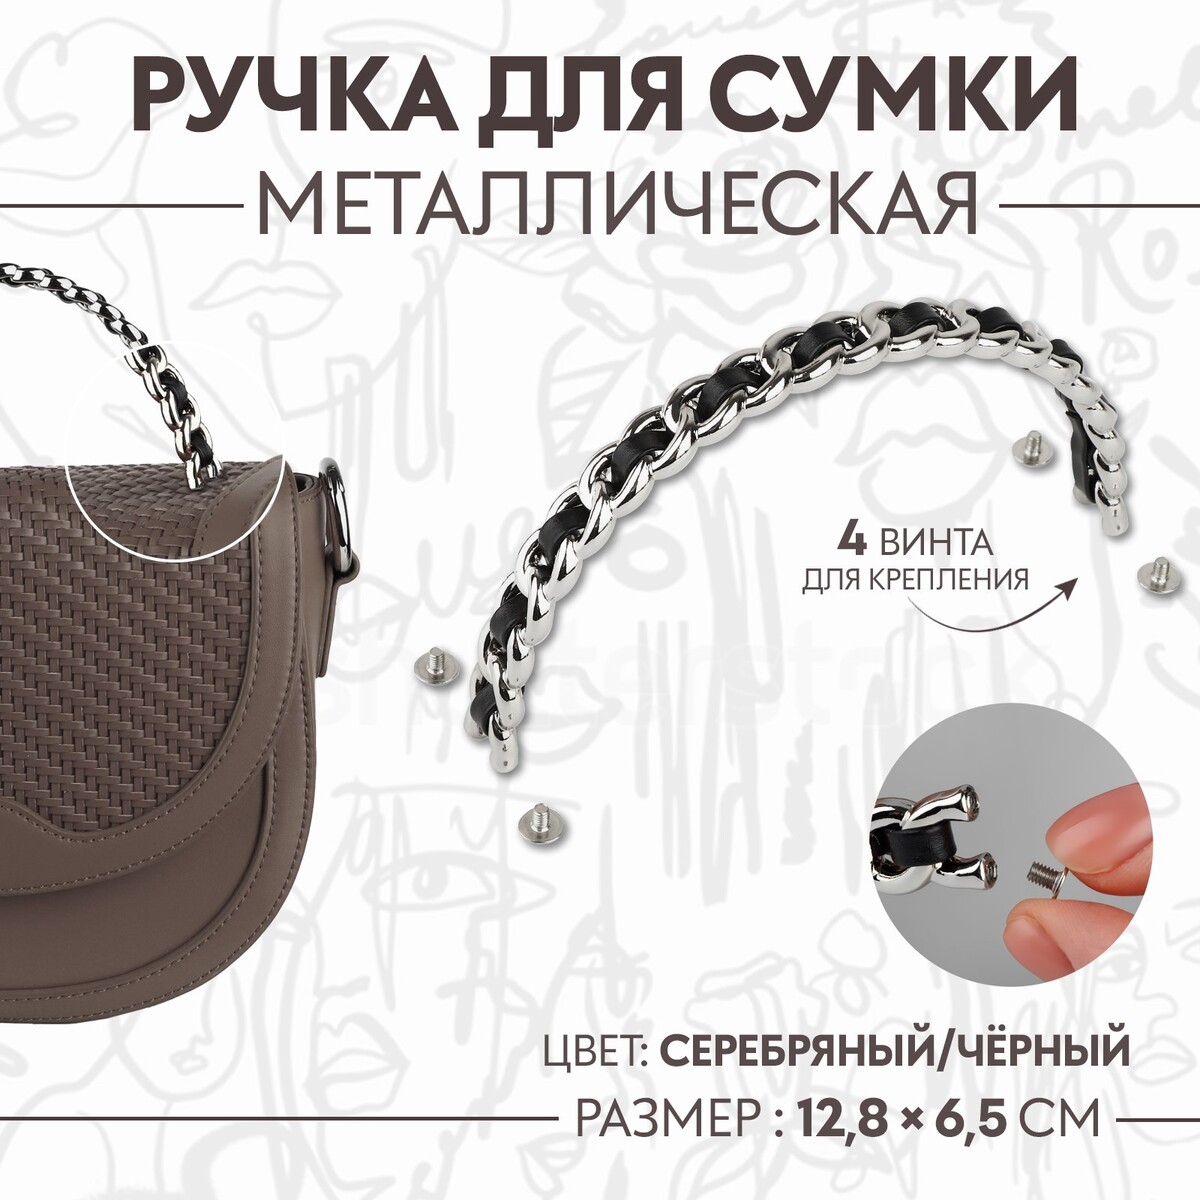 Ручка для сумки, металлическая, с винтами для крепления, 12,8 × 6,5 см, цвет серебряный/черный скалка металлическая